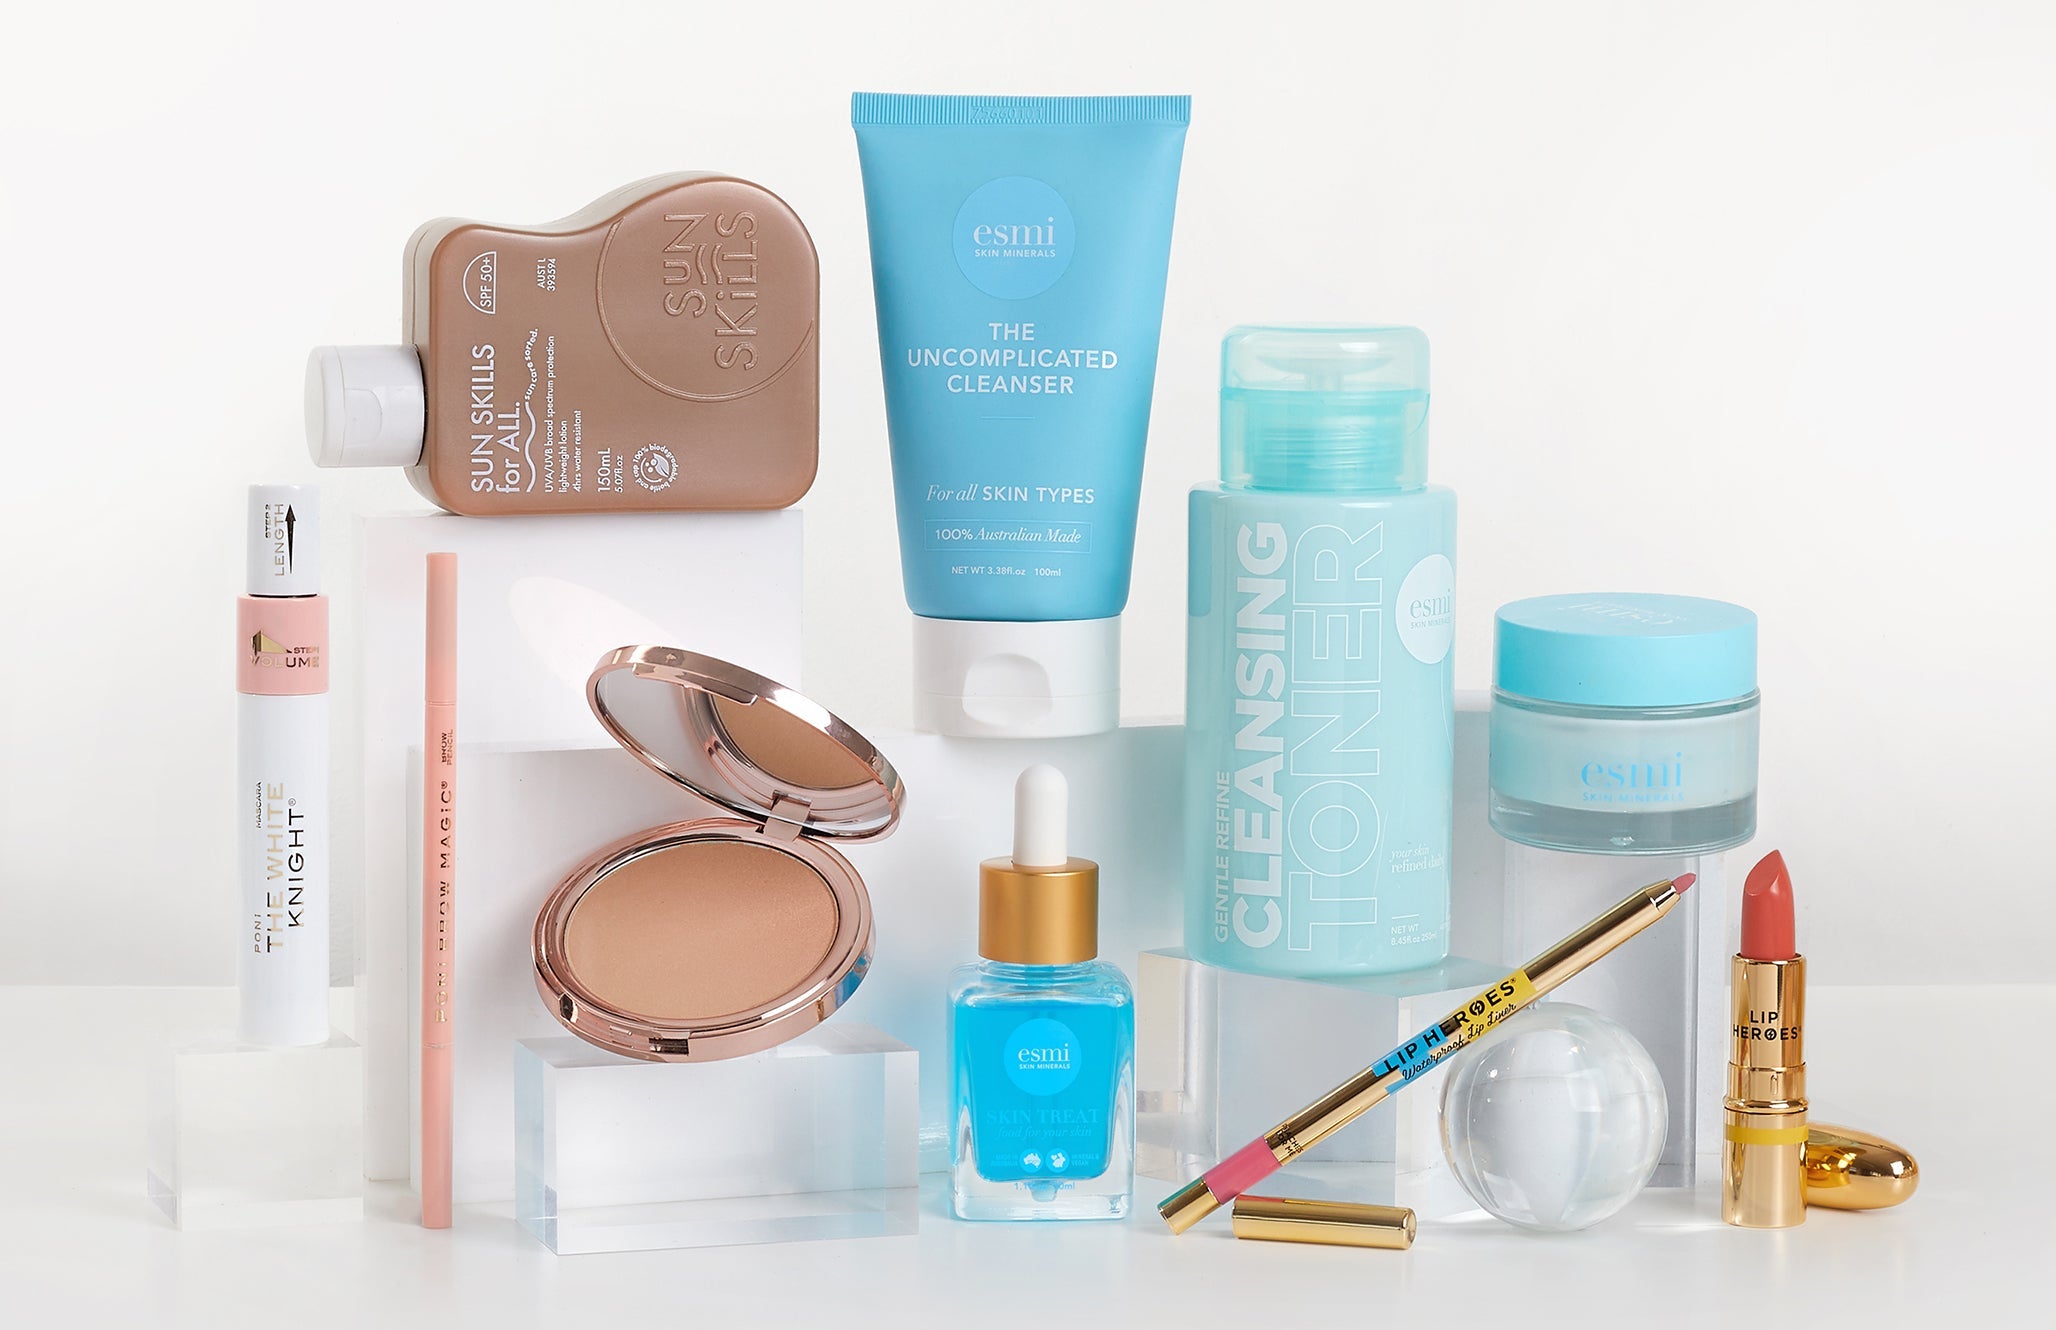 Makeup Cartel product assortment